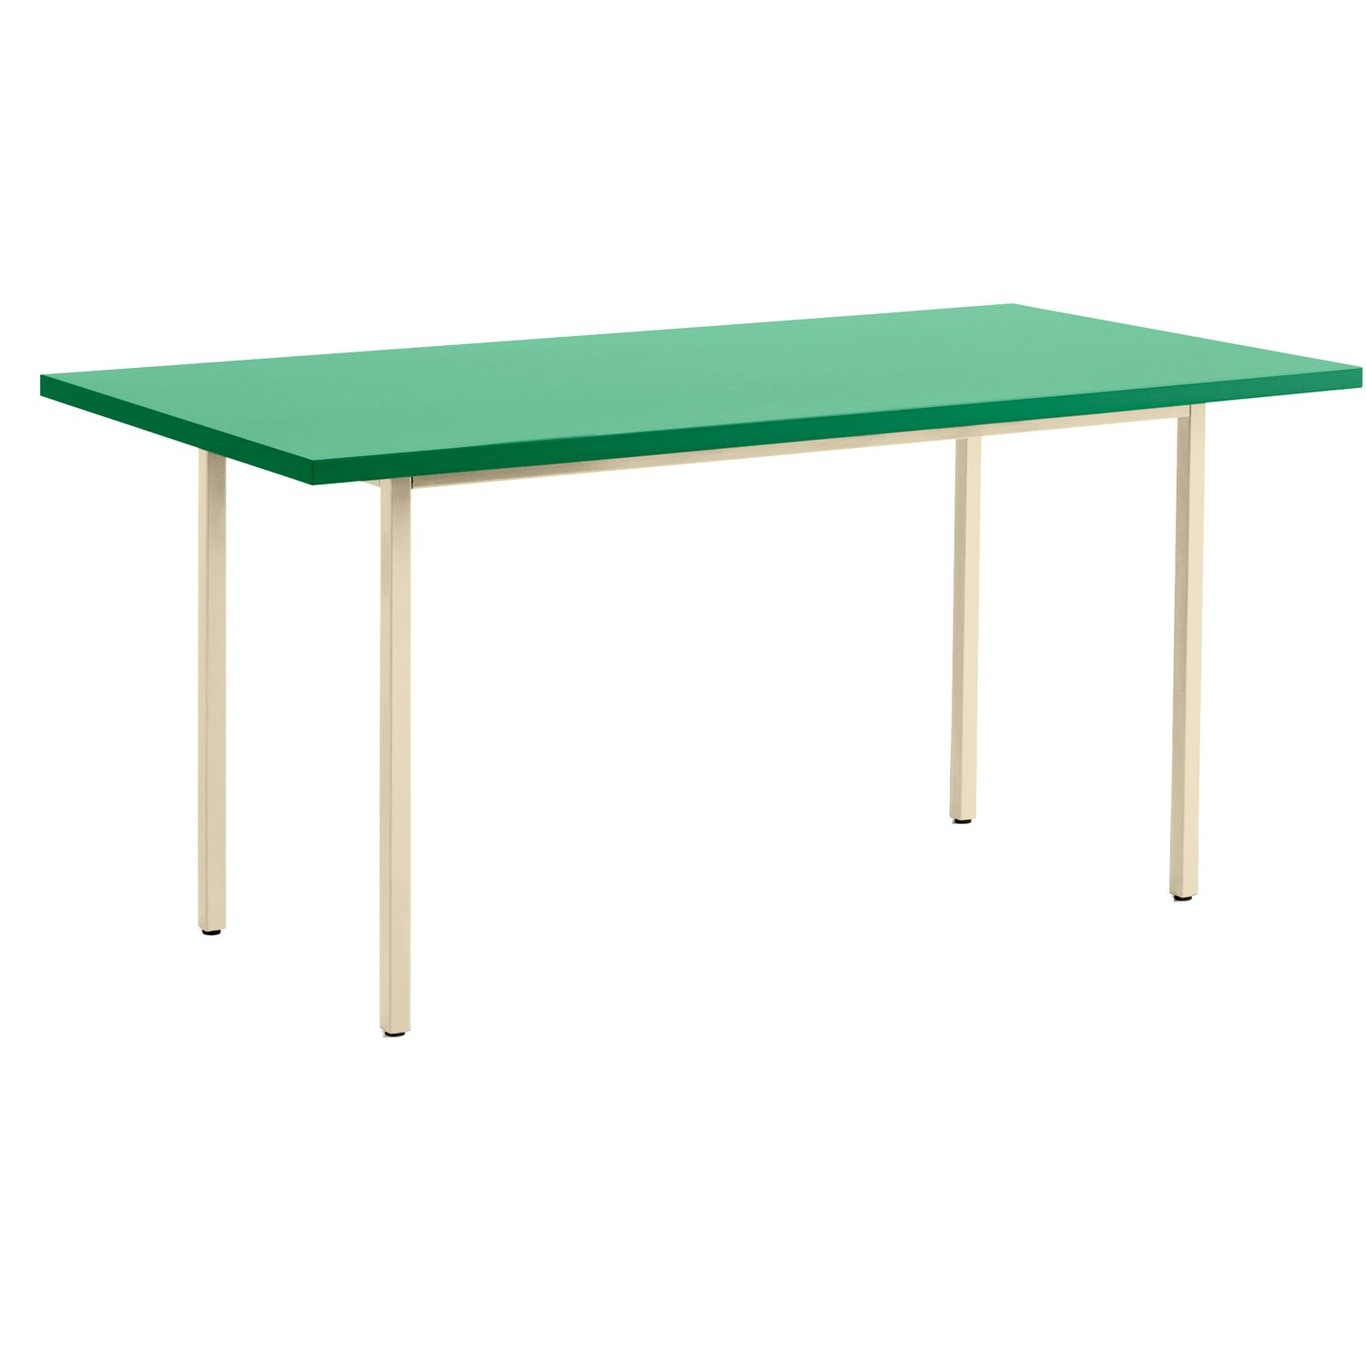 Two-Colour Tisch, Elfenbein 160x82 cm, Elfenbein / Green Mint